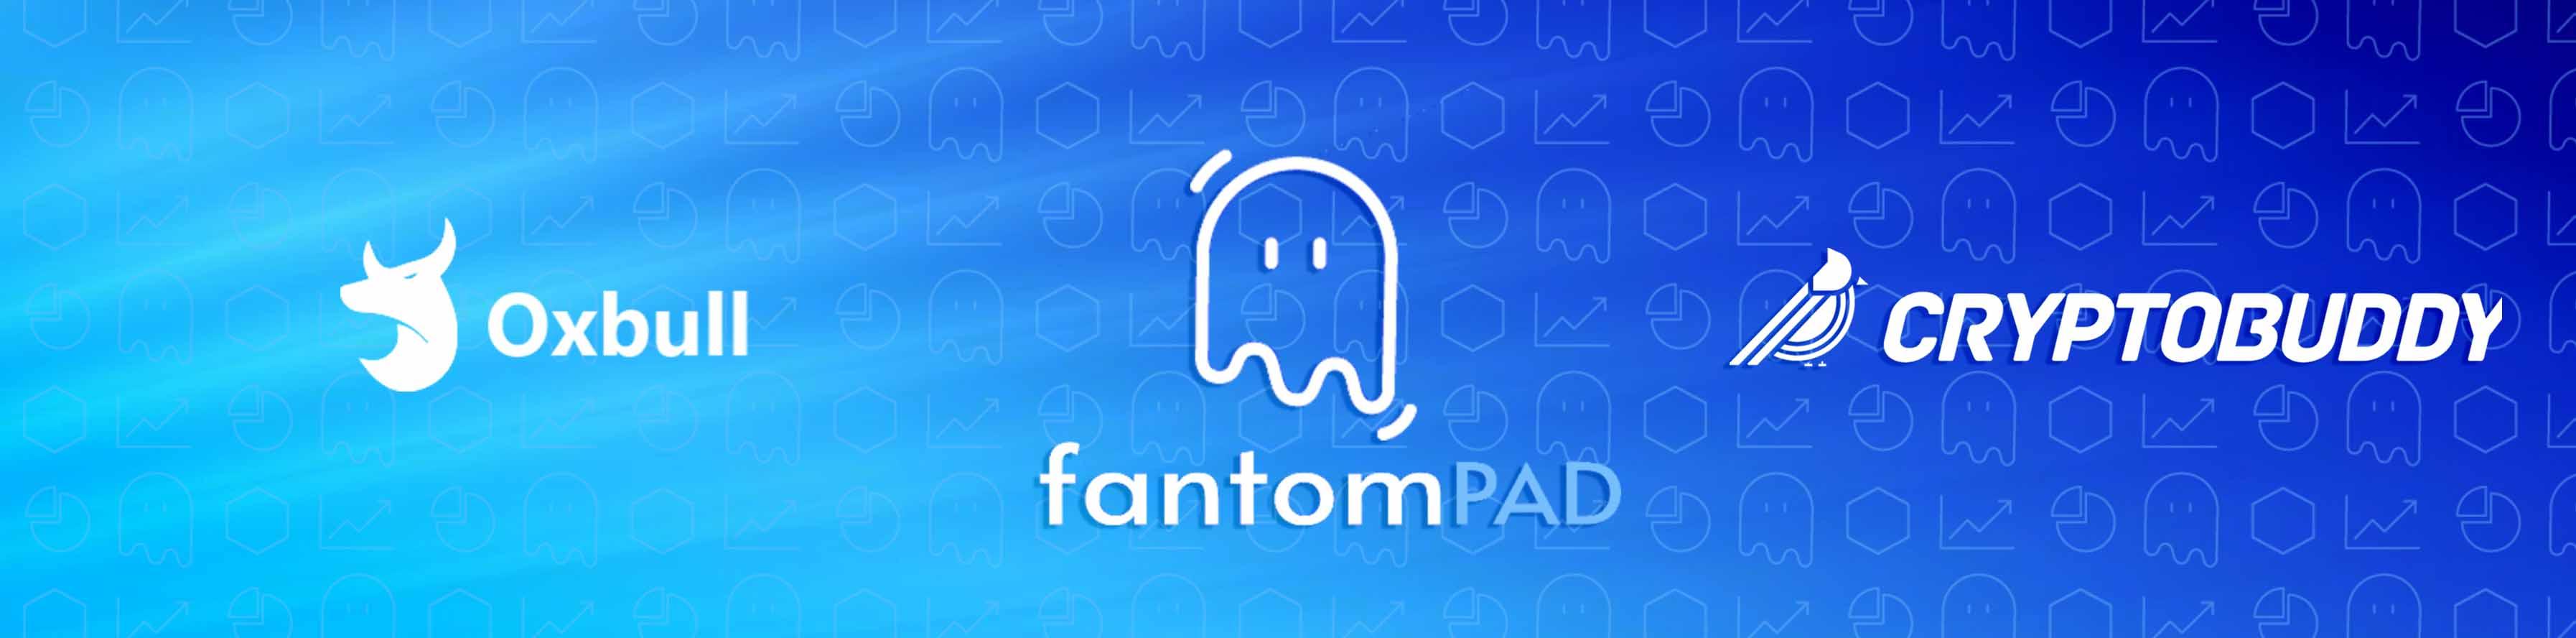 FantomPad Oxbull IDO - Whitelist for Cryptobuddy Community